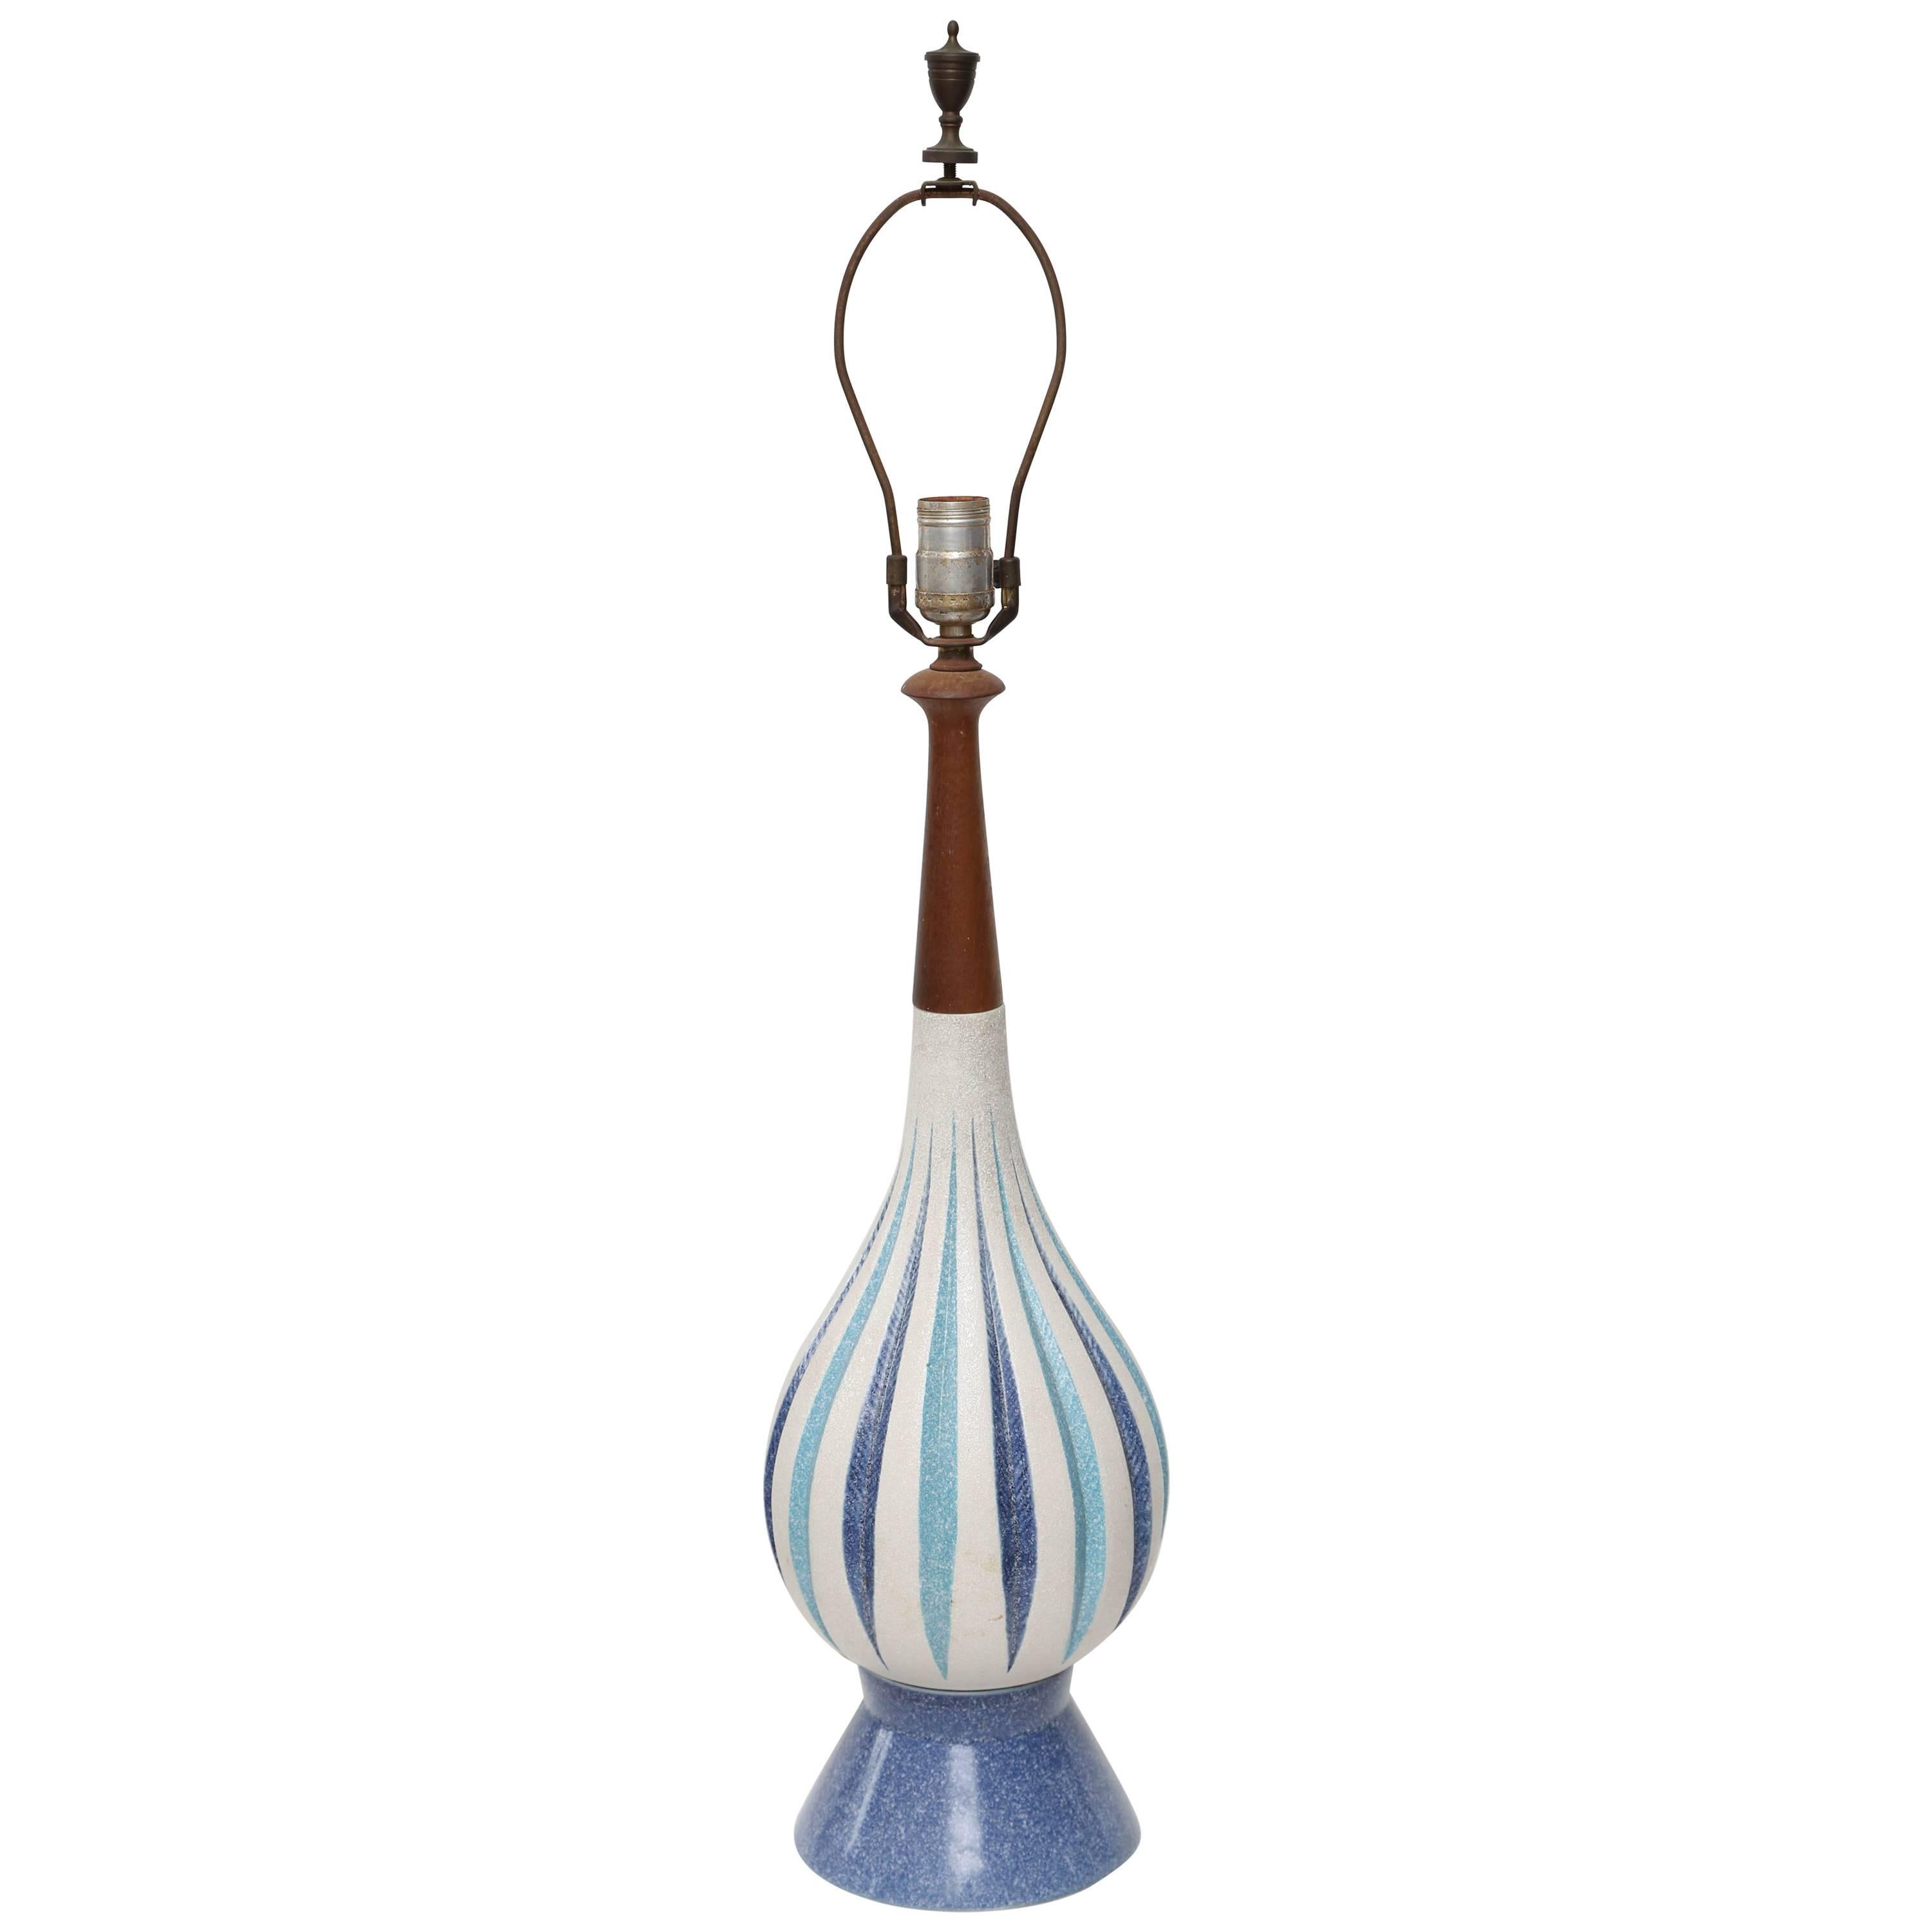 MCM-Lampe aus Keramik und Teakholz, 1960er Jahre, USA